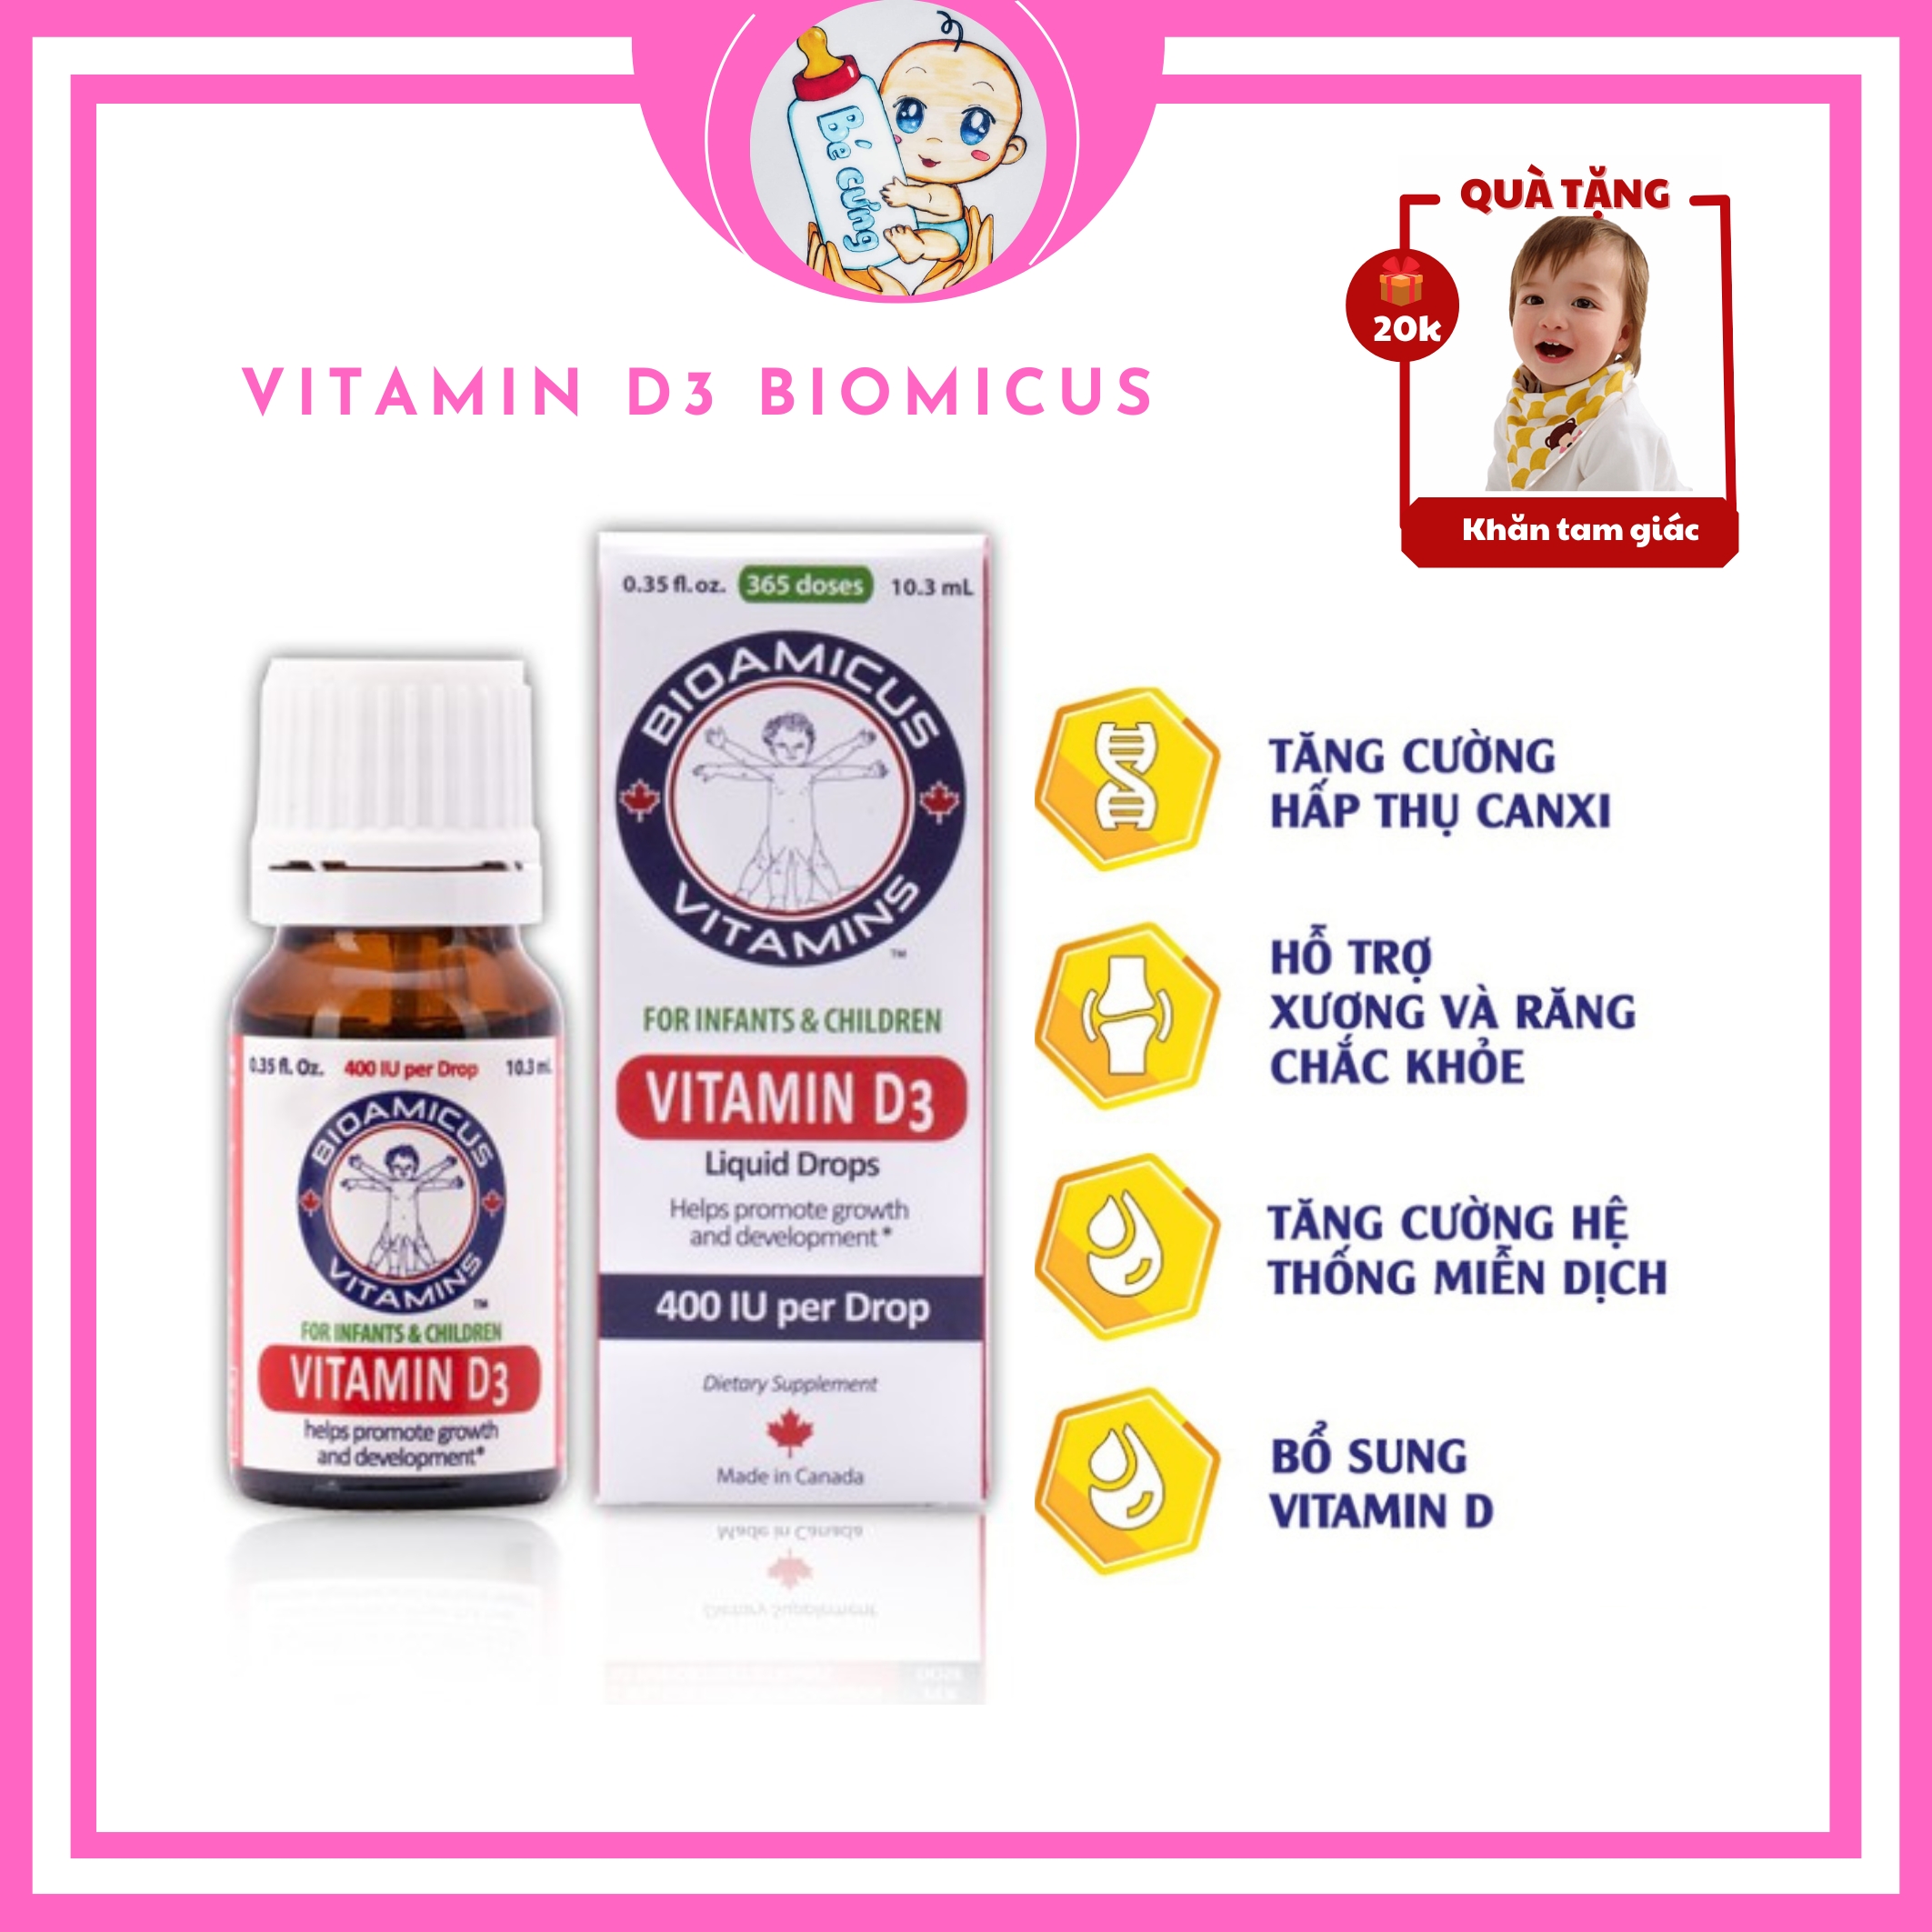 vitamin d3 k2 vitamin d3 k2 mk7 BioAmicus tăng cường haaso thu canxi chống còi xương sử dụng cho trẻ sơ sinh Bé Cưng